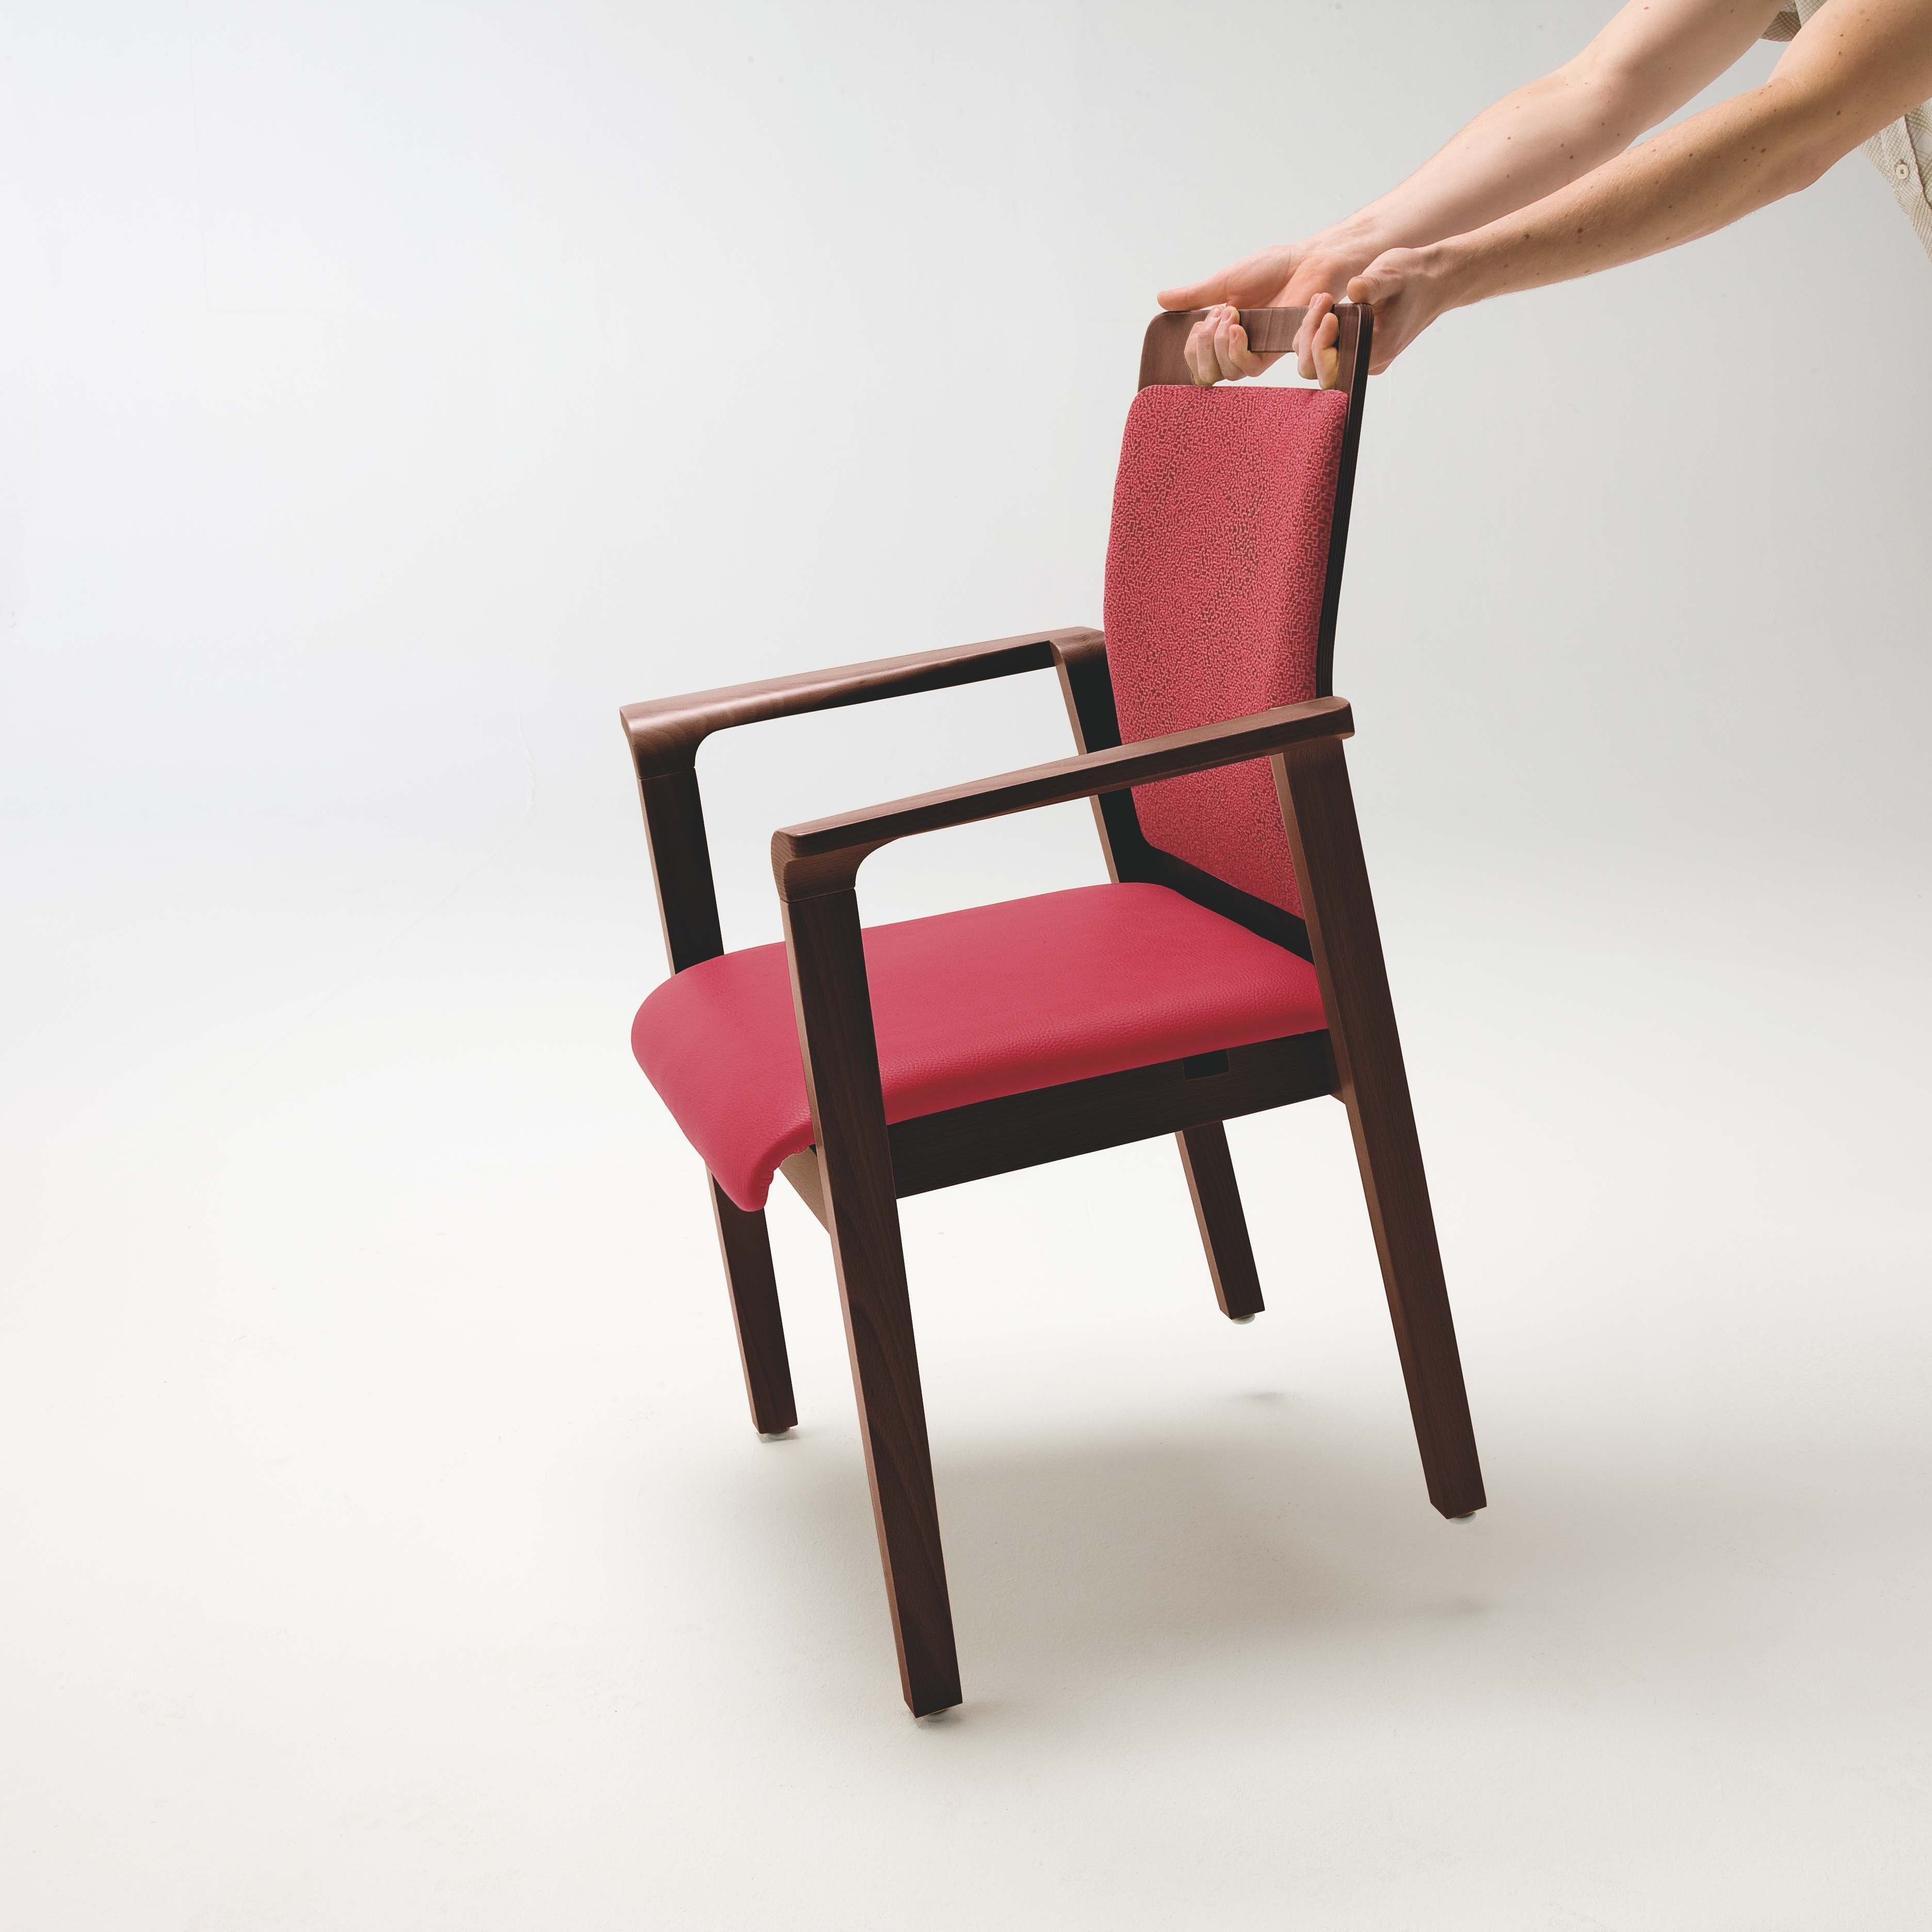 Grönemeyer Möbel für Alten- und Pflegeeinrichtungen | Gracia | Stuhlrollen